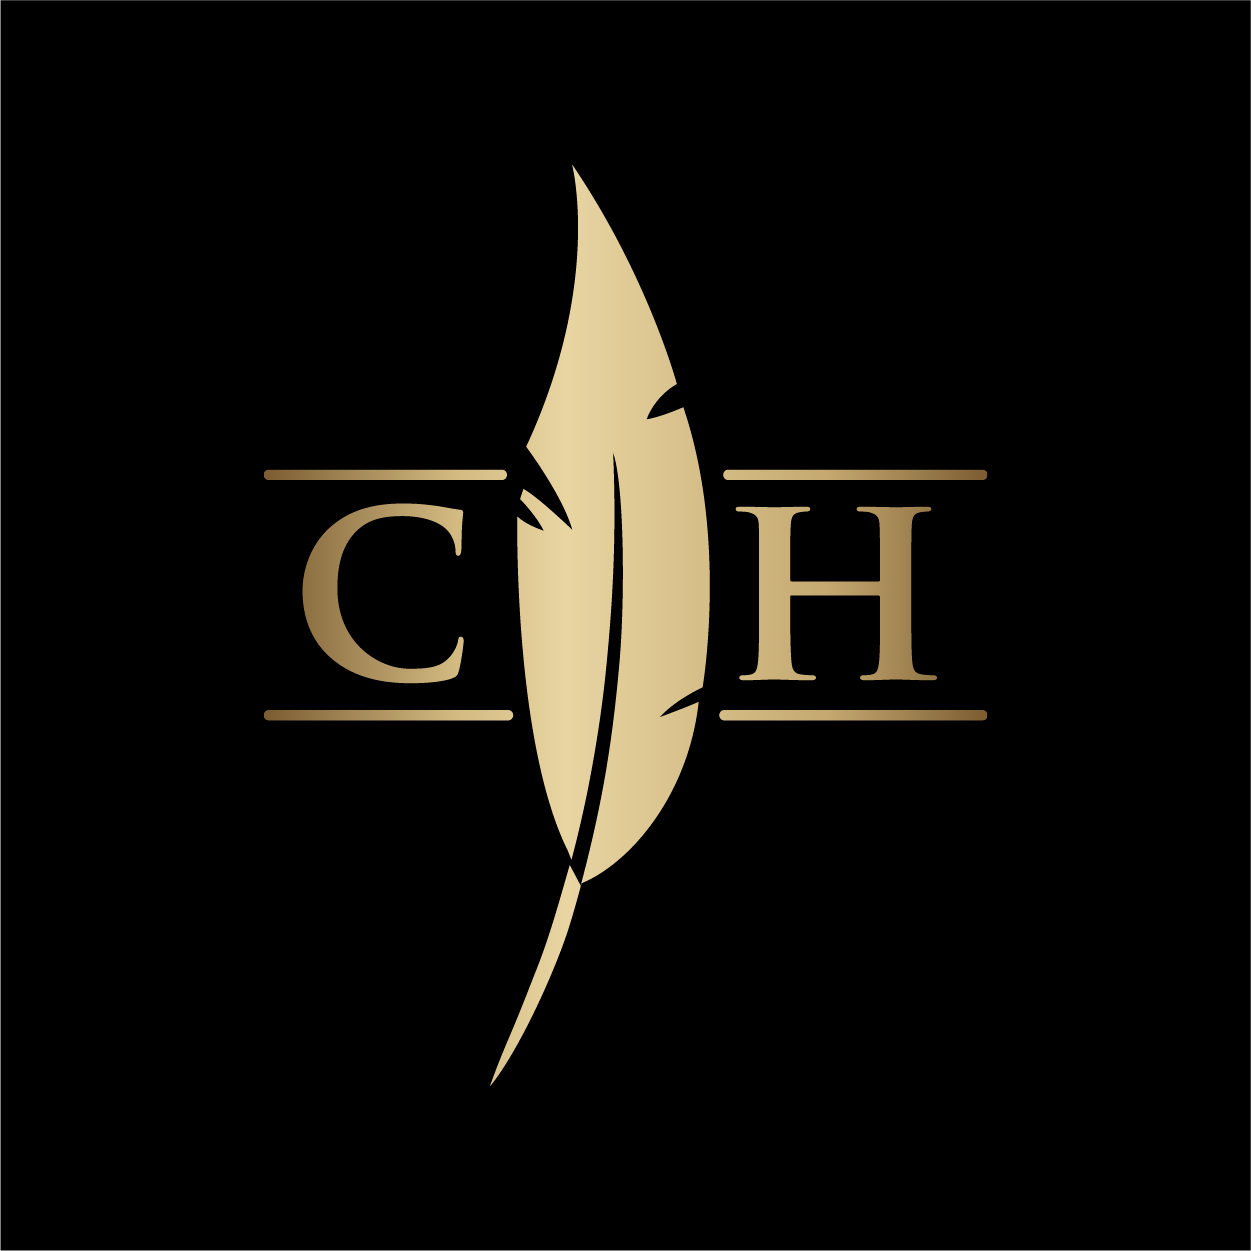 Cooper's Hawk Winery & Restaurant- Chandler - Chandler, AZ 85226 - (480)936-7711 | ShowMeLocal.com